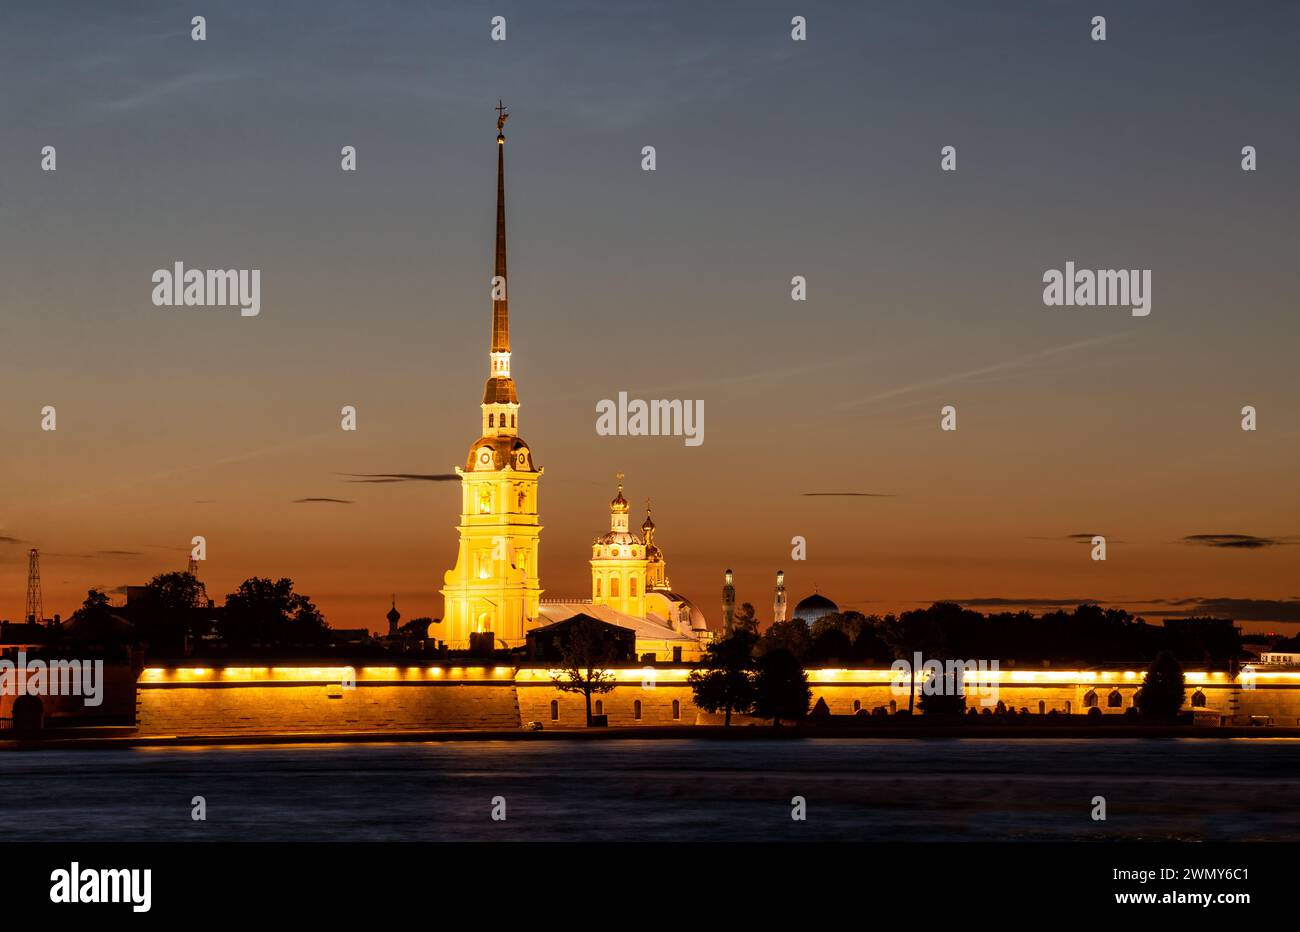 Notti bianche a San Pietroburgo. Illuminata la Fortezza di Pietro e Paolo sullo sfondo del cielo del tramonto Foto Stock